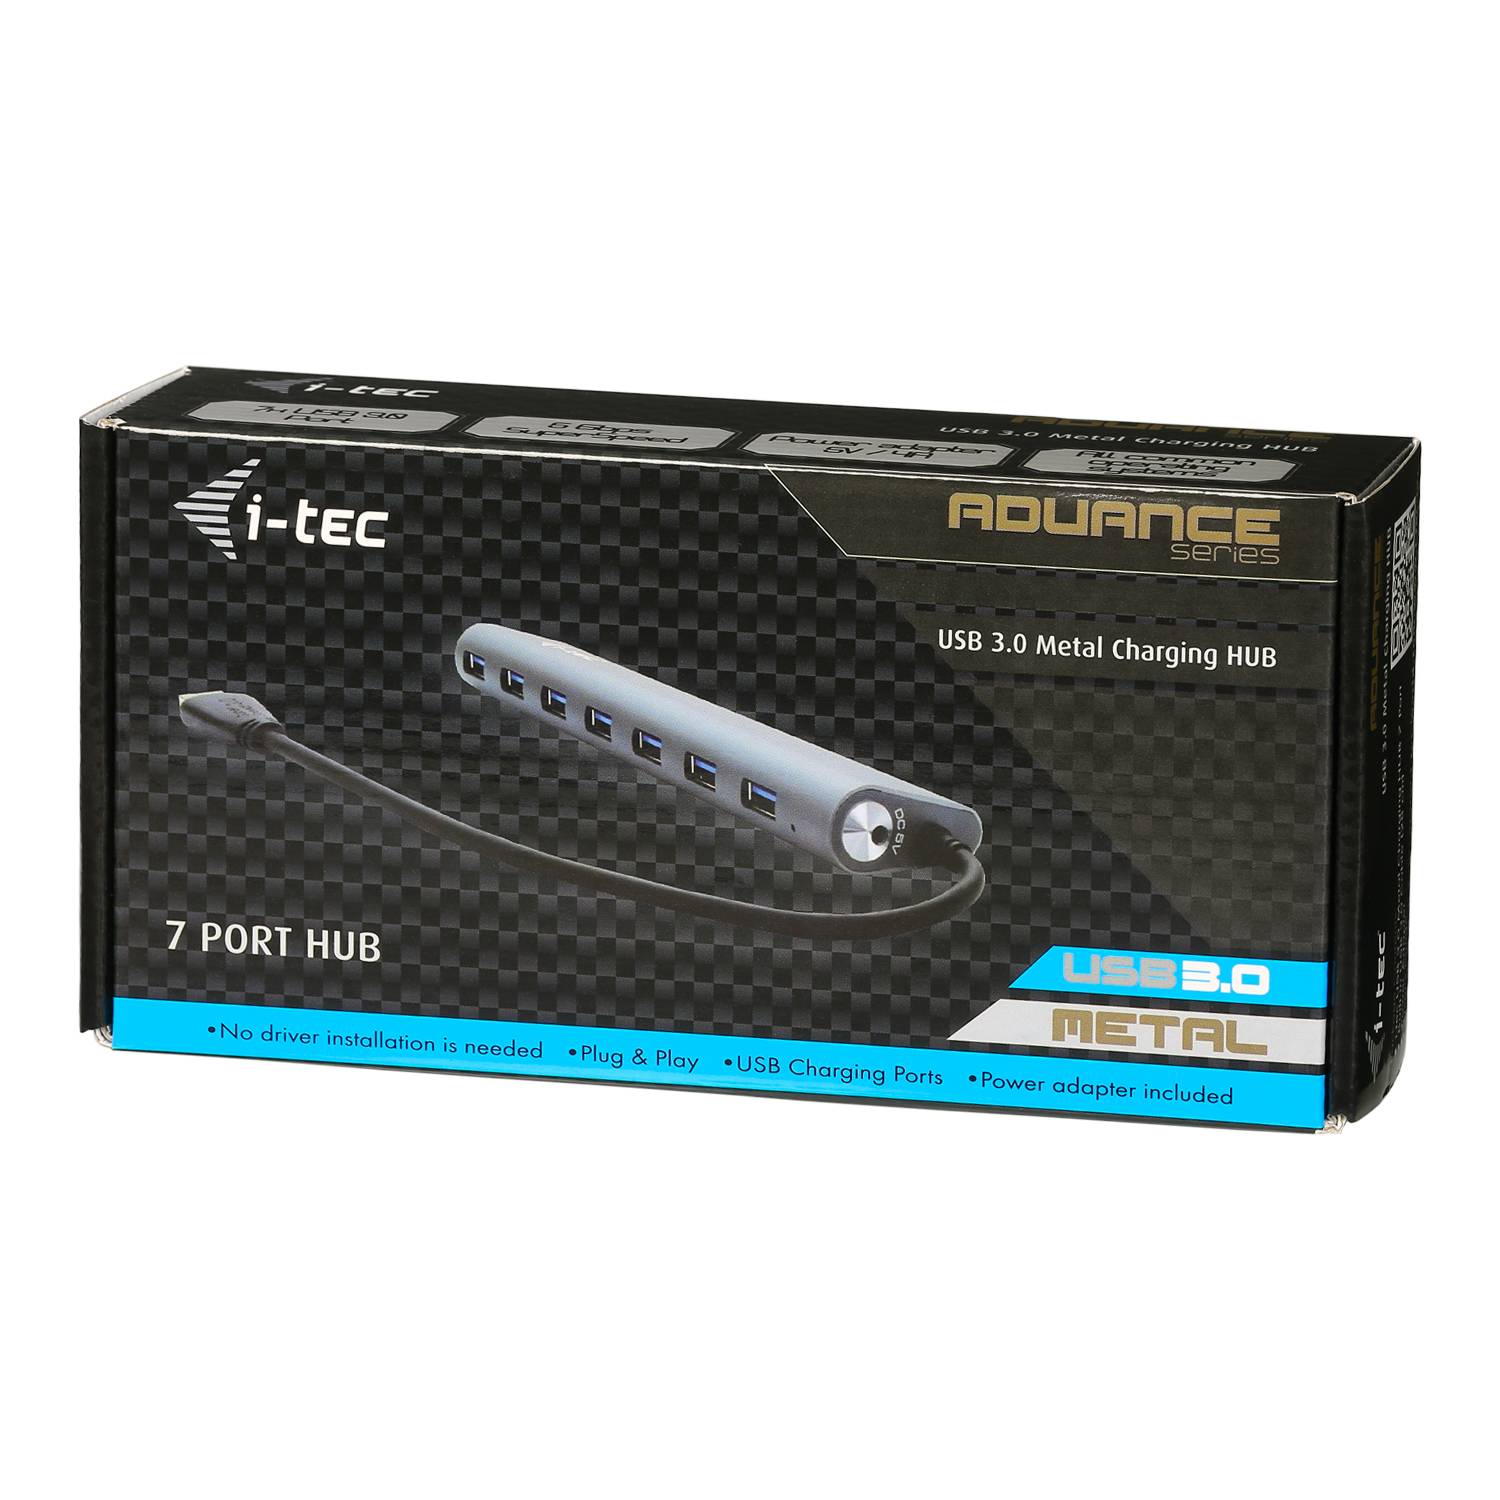 Rca Informatique - image du produit : I-TEC METAL CHARGING HUB 7 PORT USB 3.0 EXT PS 7X USB CHARGING